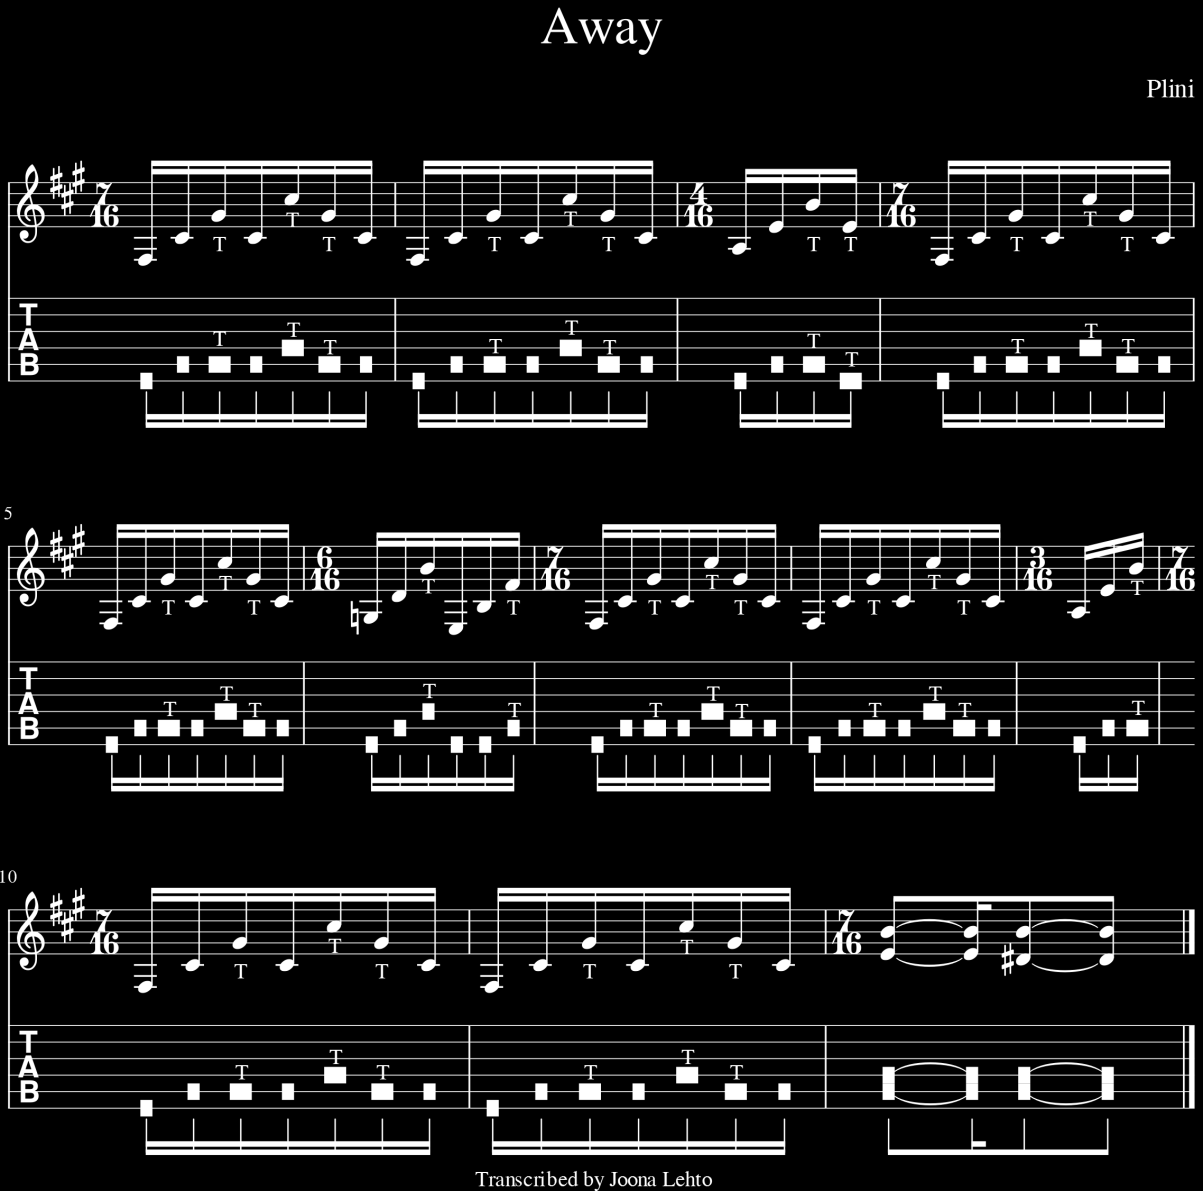 27 Kuvio 16. Away -nuottiesimerkki Toinen esimerkki on australialaisen kitaristin, Plinin, sävellyksestä Away kohta 1:08-1:16. Tämä pätkä on ensimmäinen maali kyseisestä osasta.